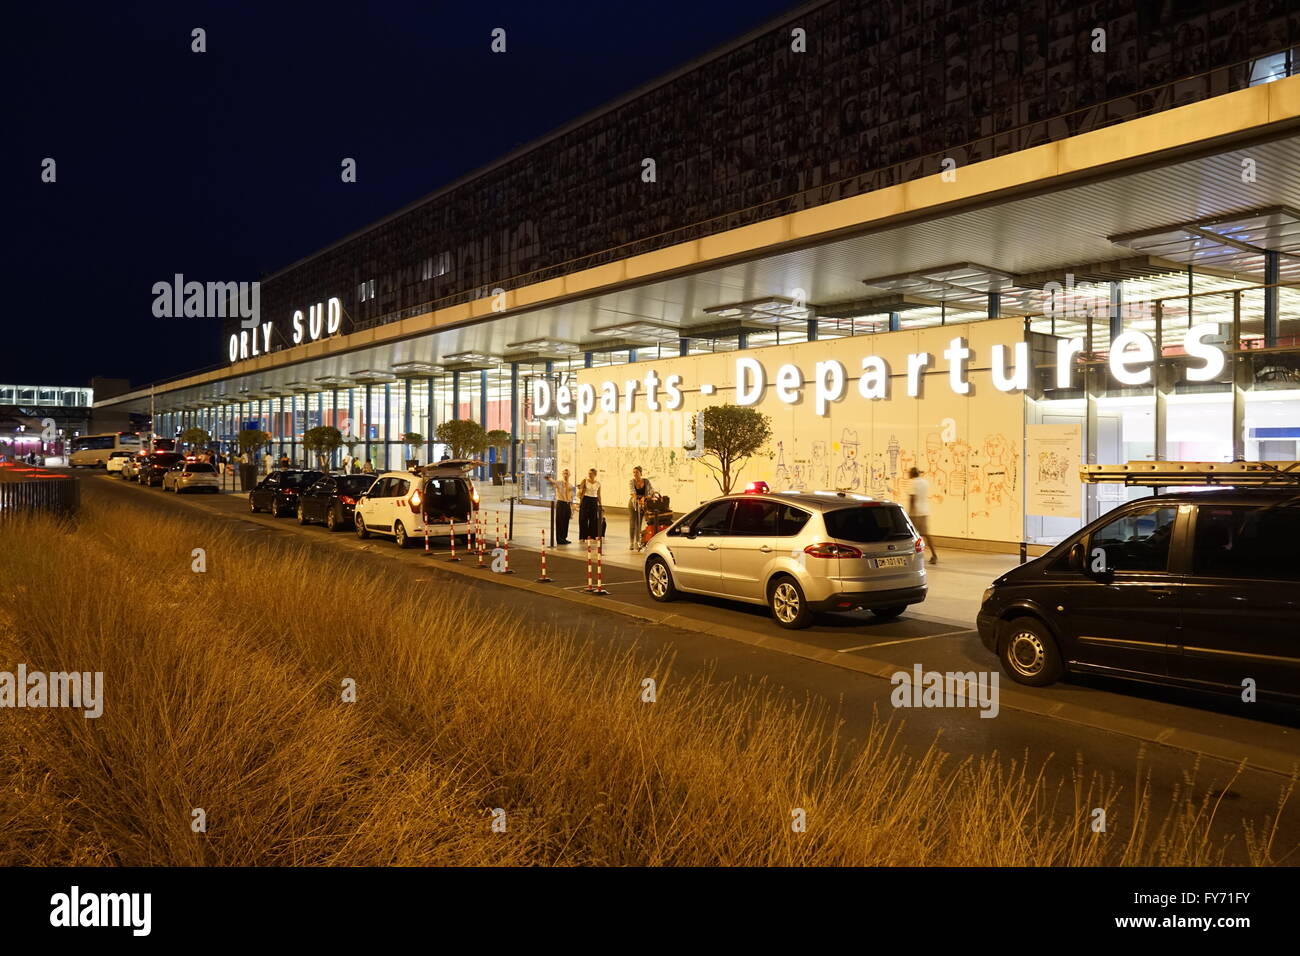 Vue de nuit le hall de départ de l'aéroport de Paris Orly, Paris, France Banque D'Images